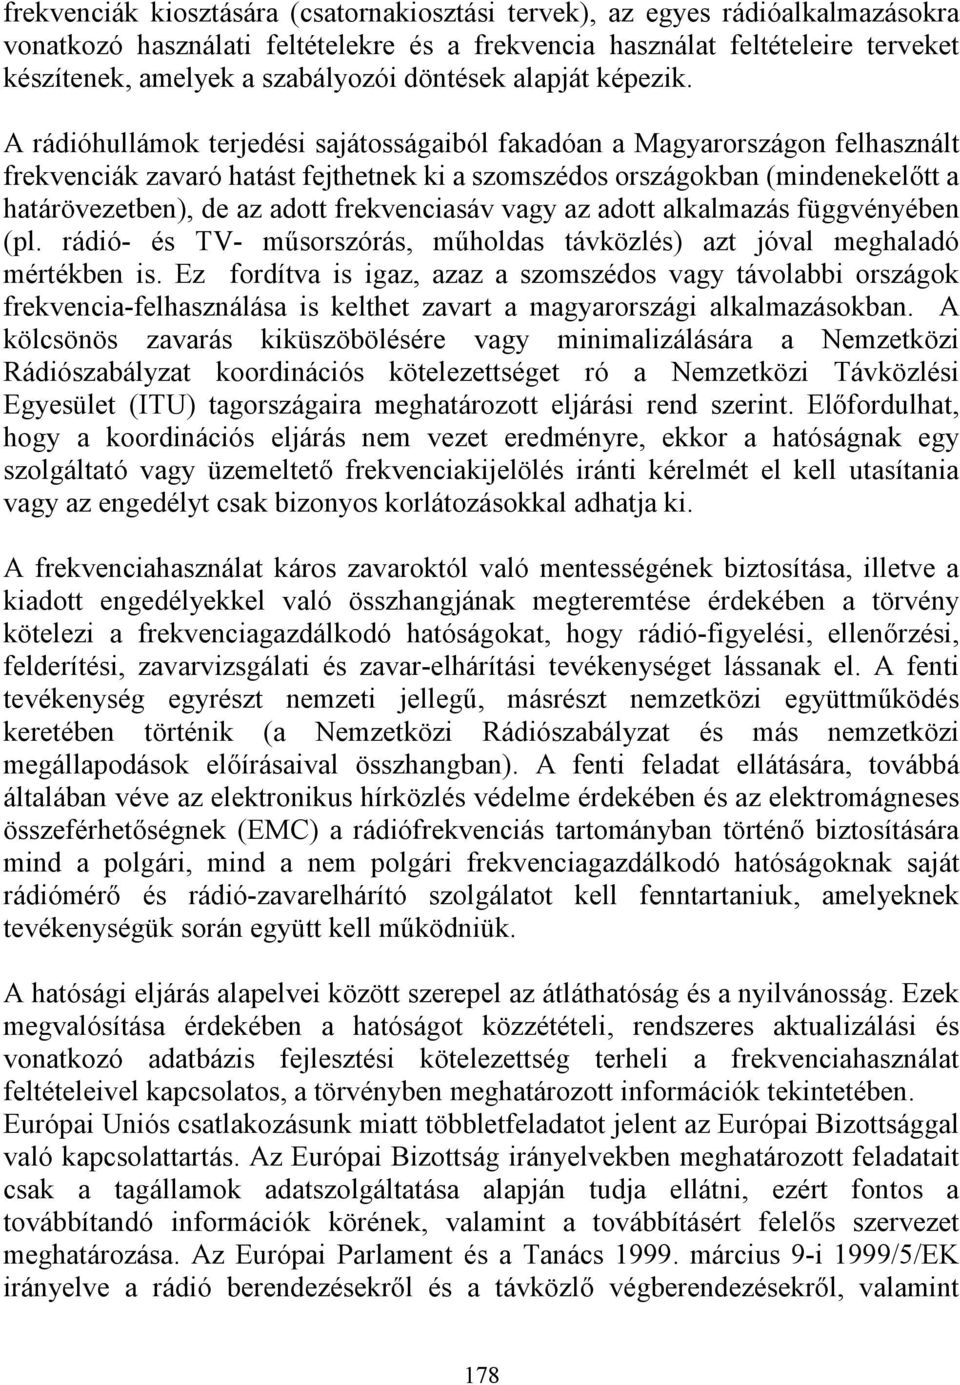 A rádióhullámok terjedési sajátosságaiból fakadóan a Magyarországon felhasznált frekvenciák zavaró hatást fejthetnek ki a szomszédos országokban (mindenekelőtt a határövezetben), de az adott